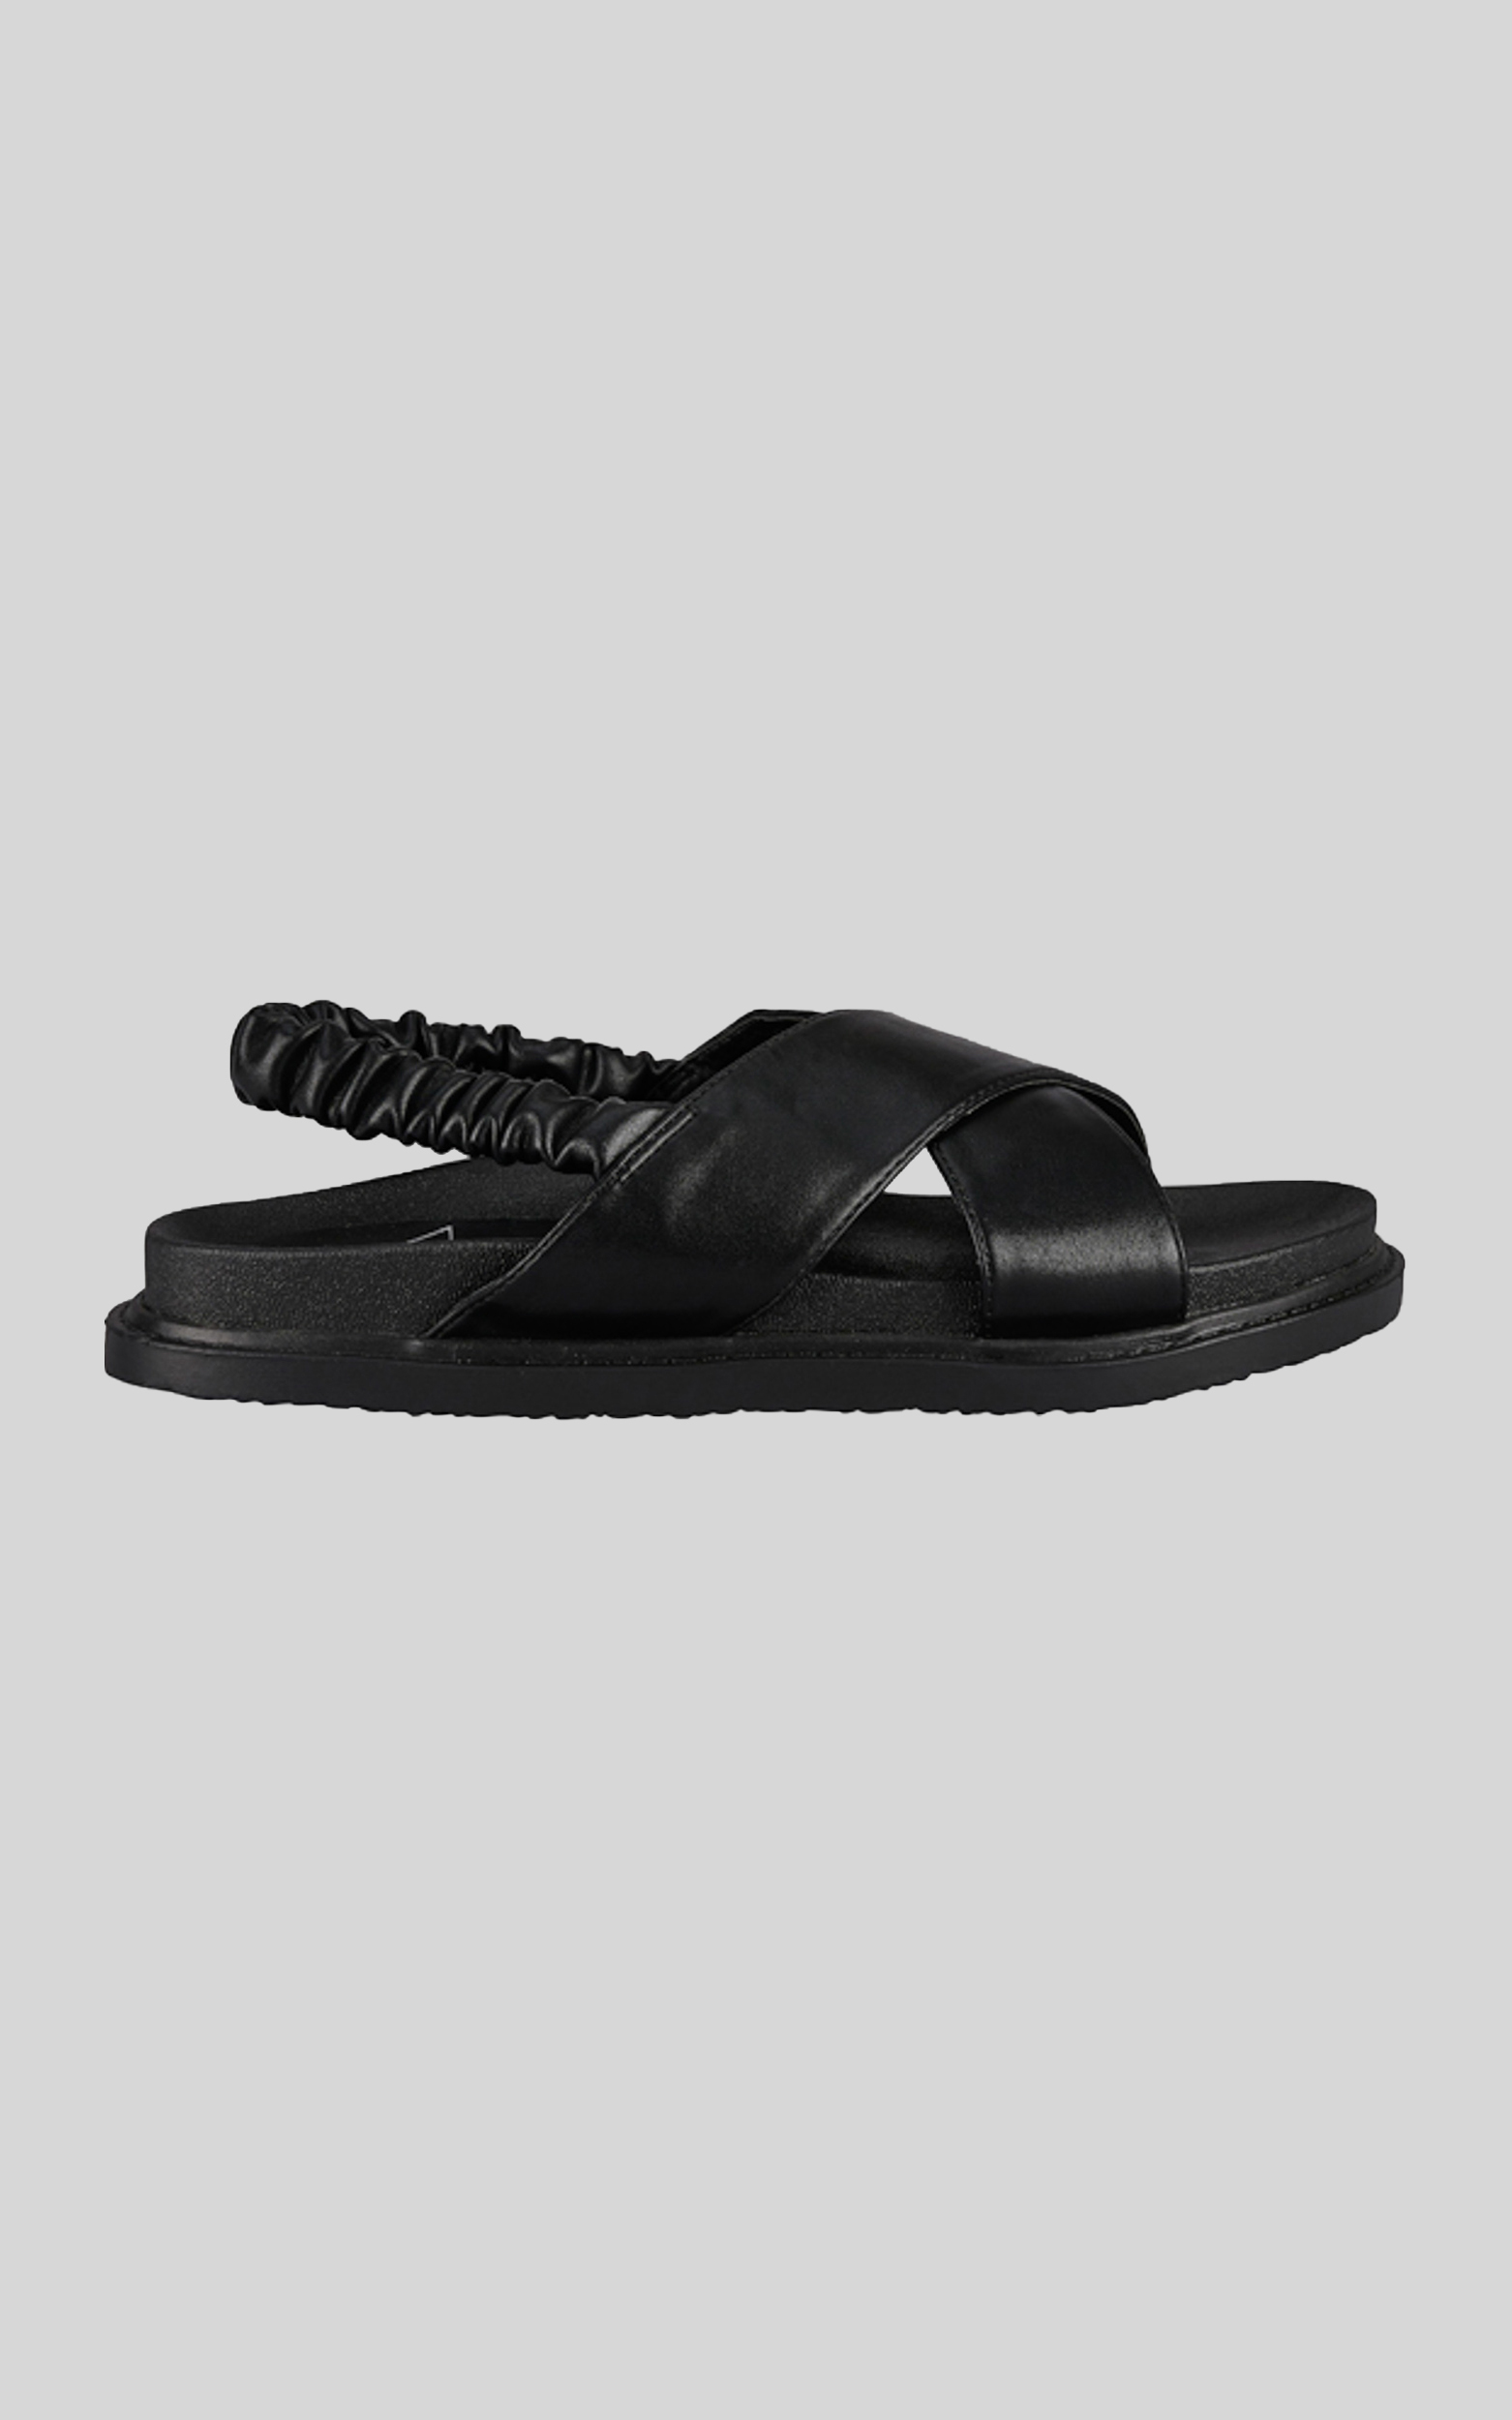 St Sana - Tatum Sandals in Black - 06, BLK1, hi-res image number null